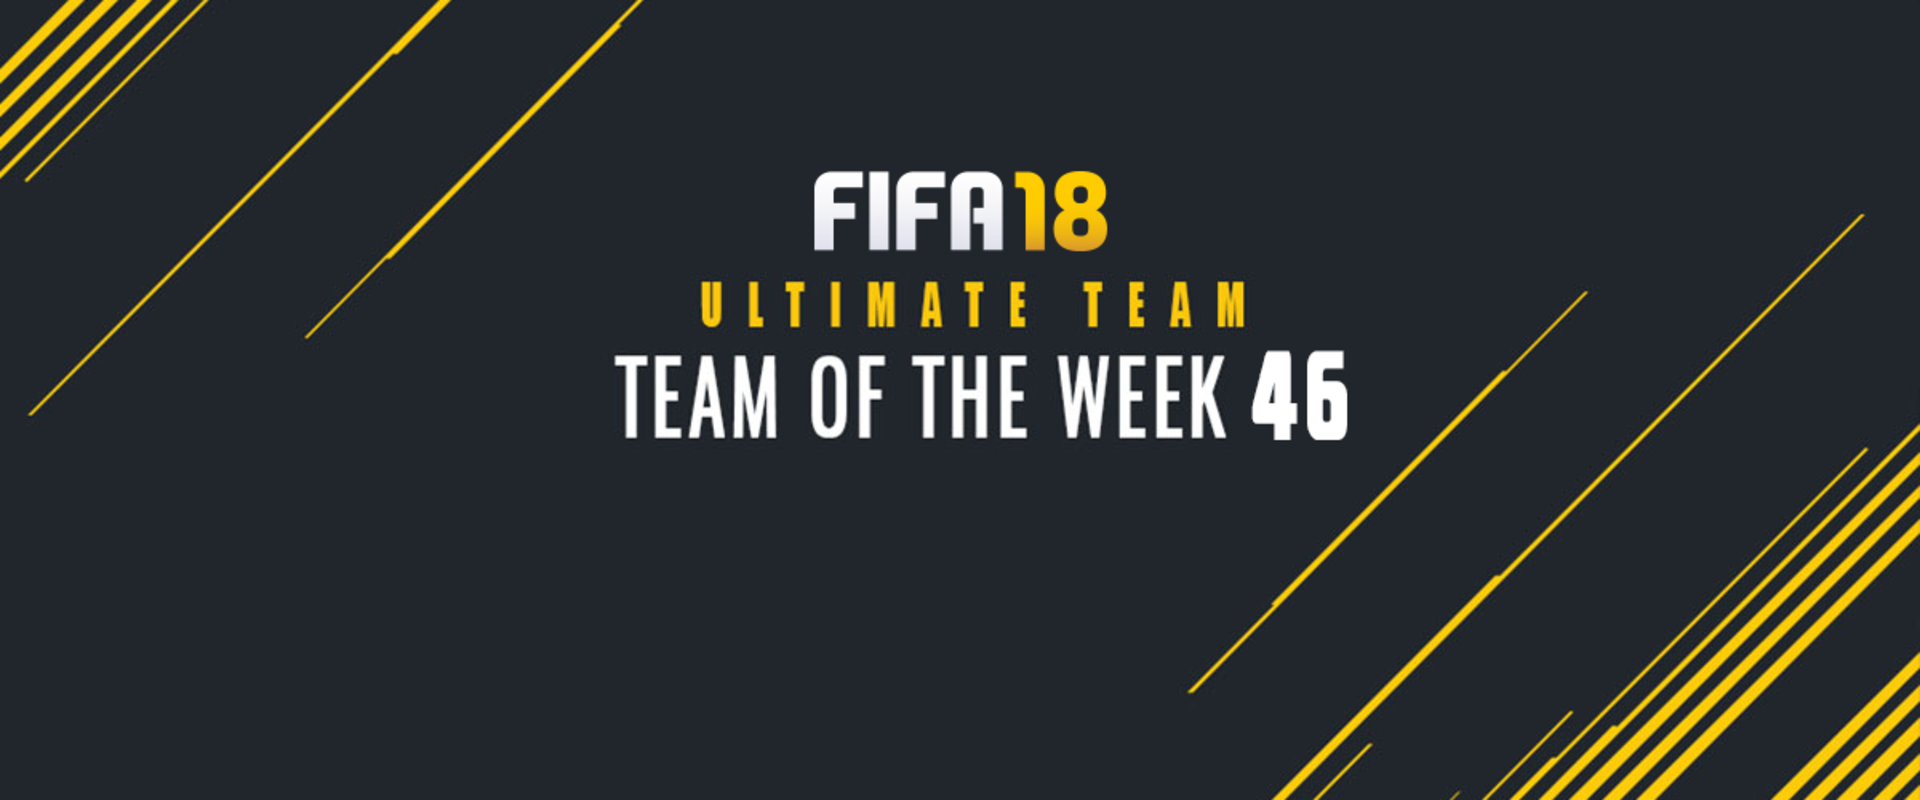 A Nemzetek Ligája hőseiből állt össze a Team of the Week 46